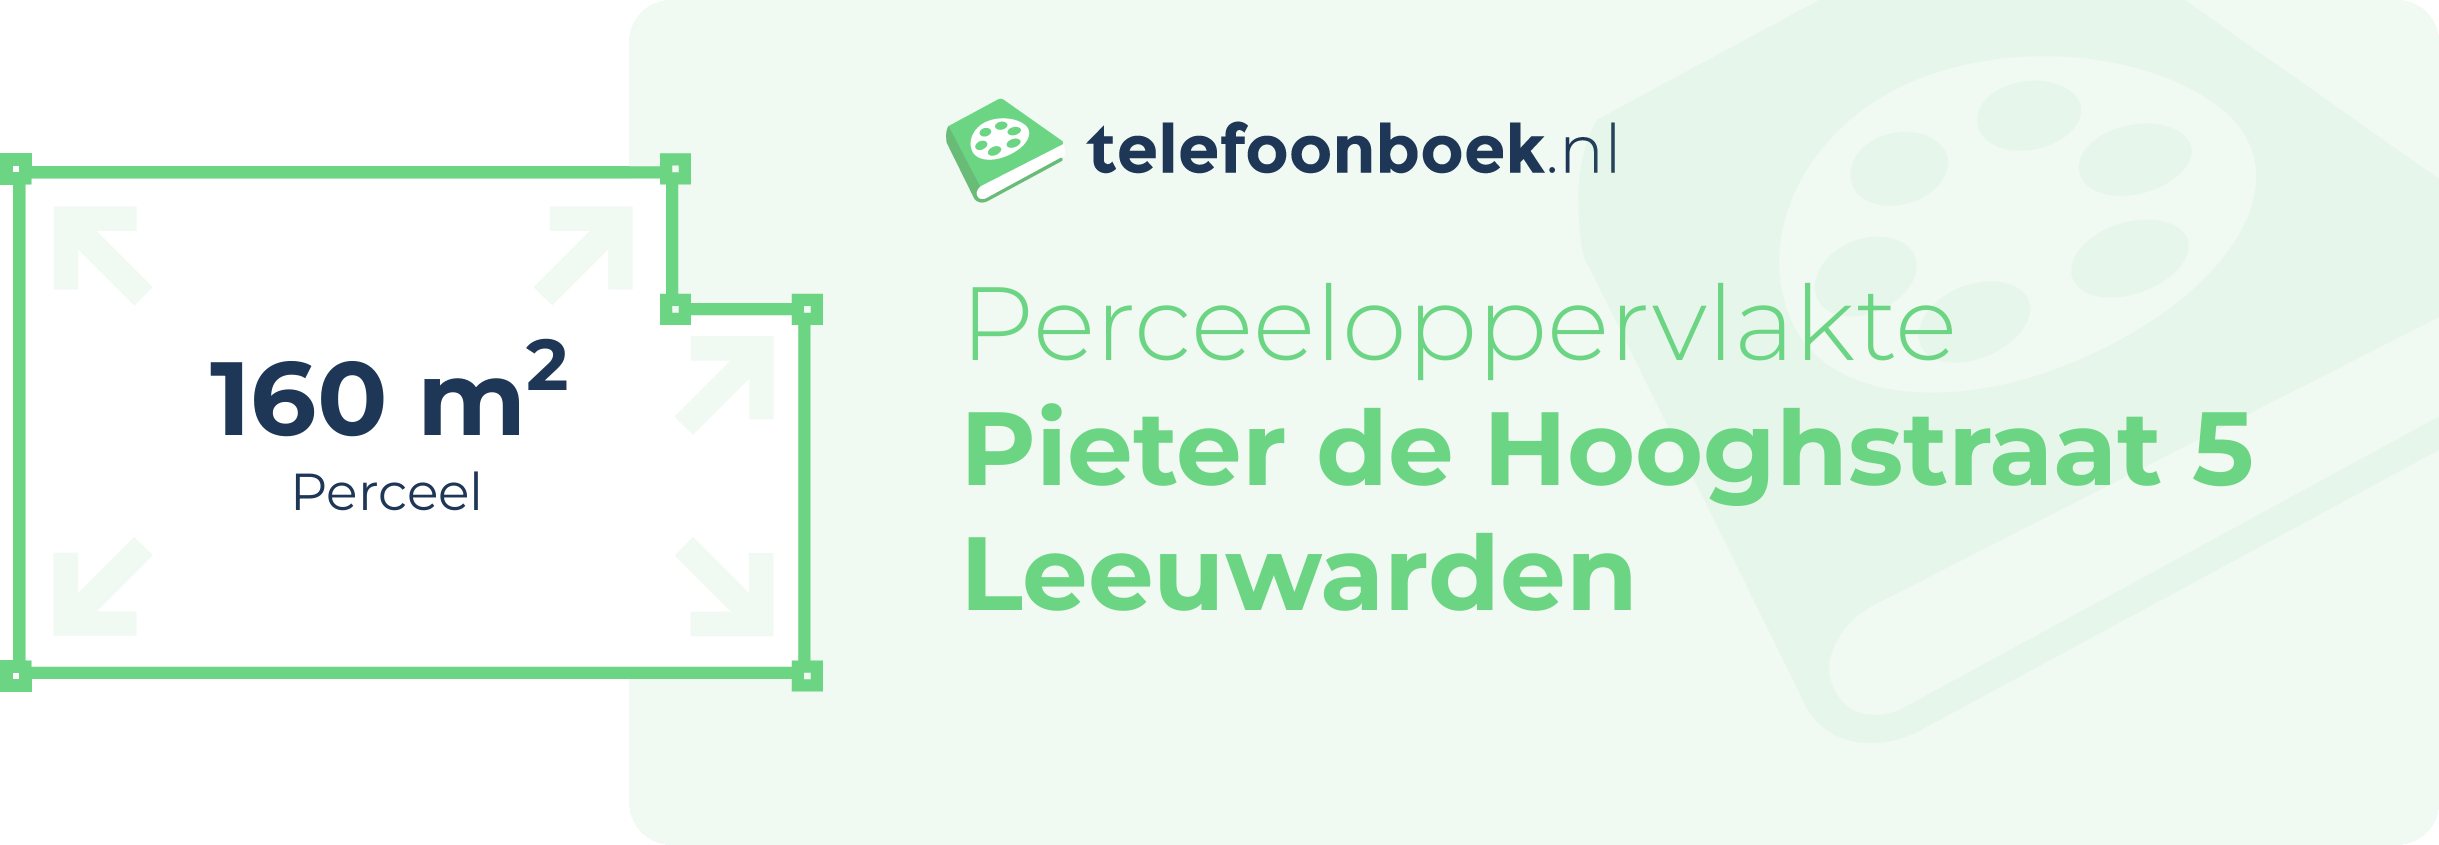 Perceeloppervlakte Pieter De Hooghstraat 5 Leeuwarden